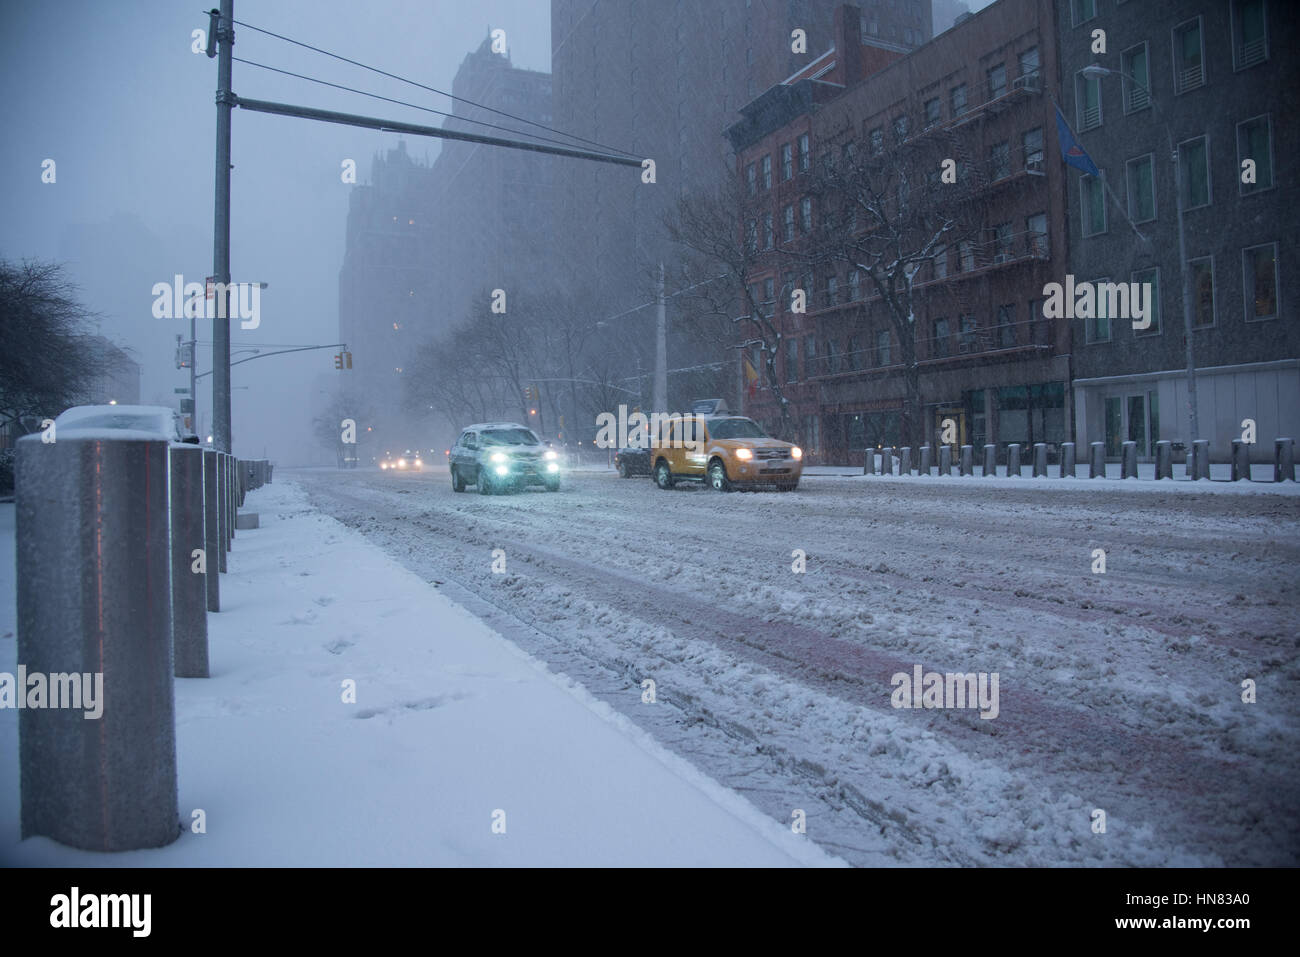 Vom 9. Februar 2017 - New York City, NY: wintersturm Niko hits new york city. First Avenue mit Schnee bedeckt, vor dem Gebäude der Vereinten Nationen, in Midtown, Manhattan. Stockfoto